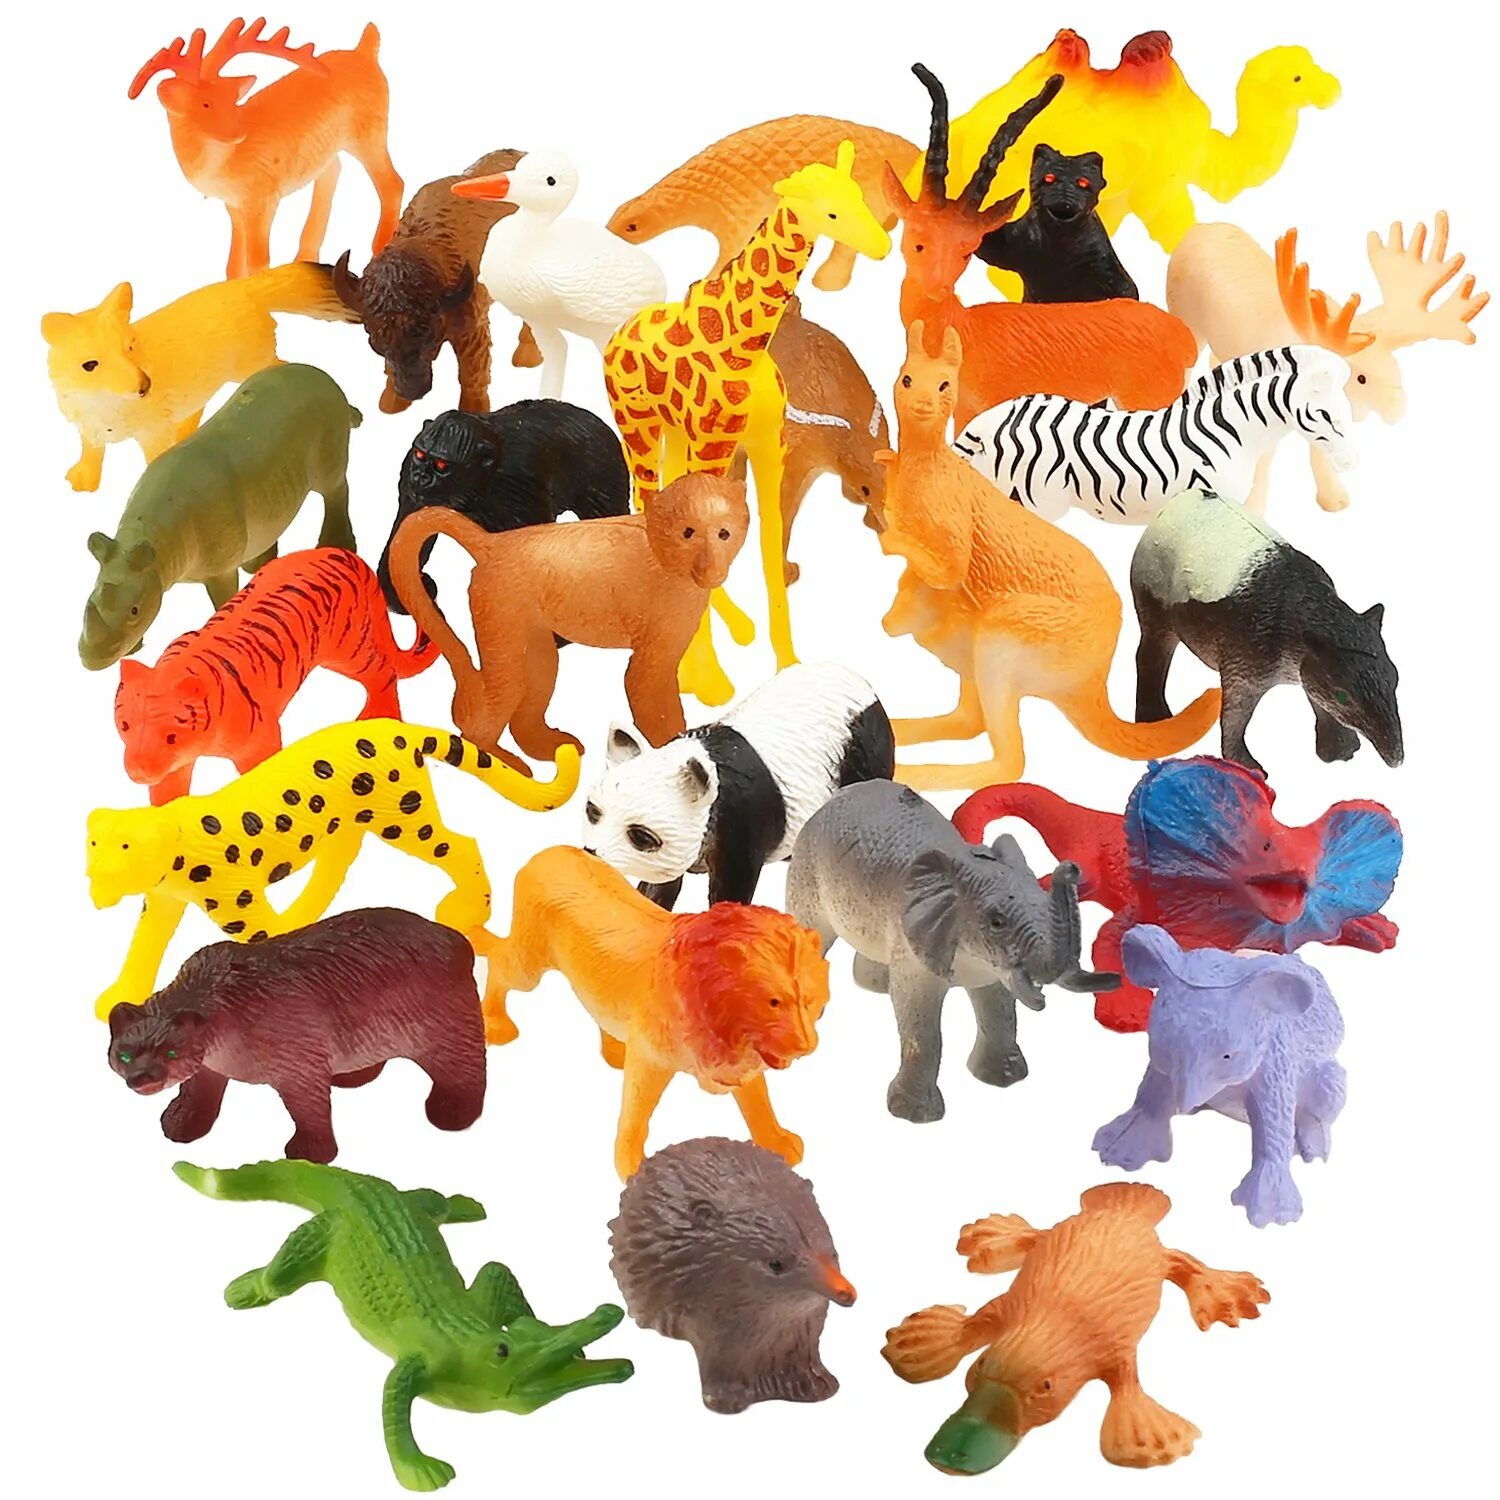 ПЭТ Энималс игрушка. Набор игрушек животных Pianet Wild сафари. DEAGOSTINI игрушки Wild animals Figure. Пластмассовые звери.